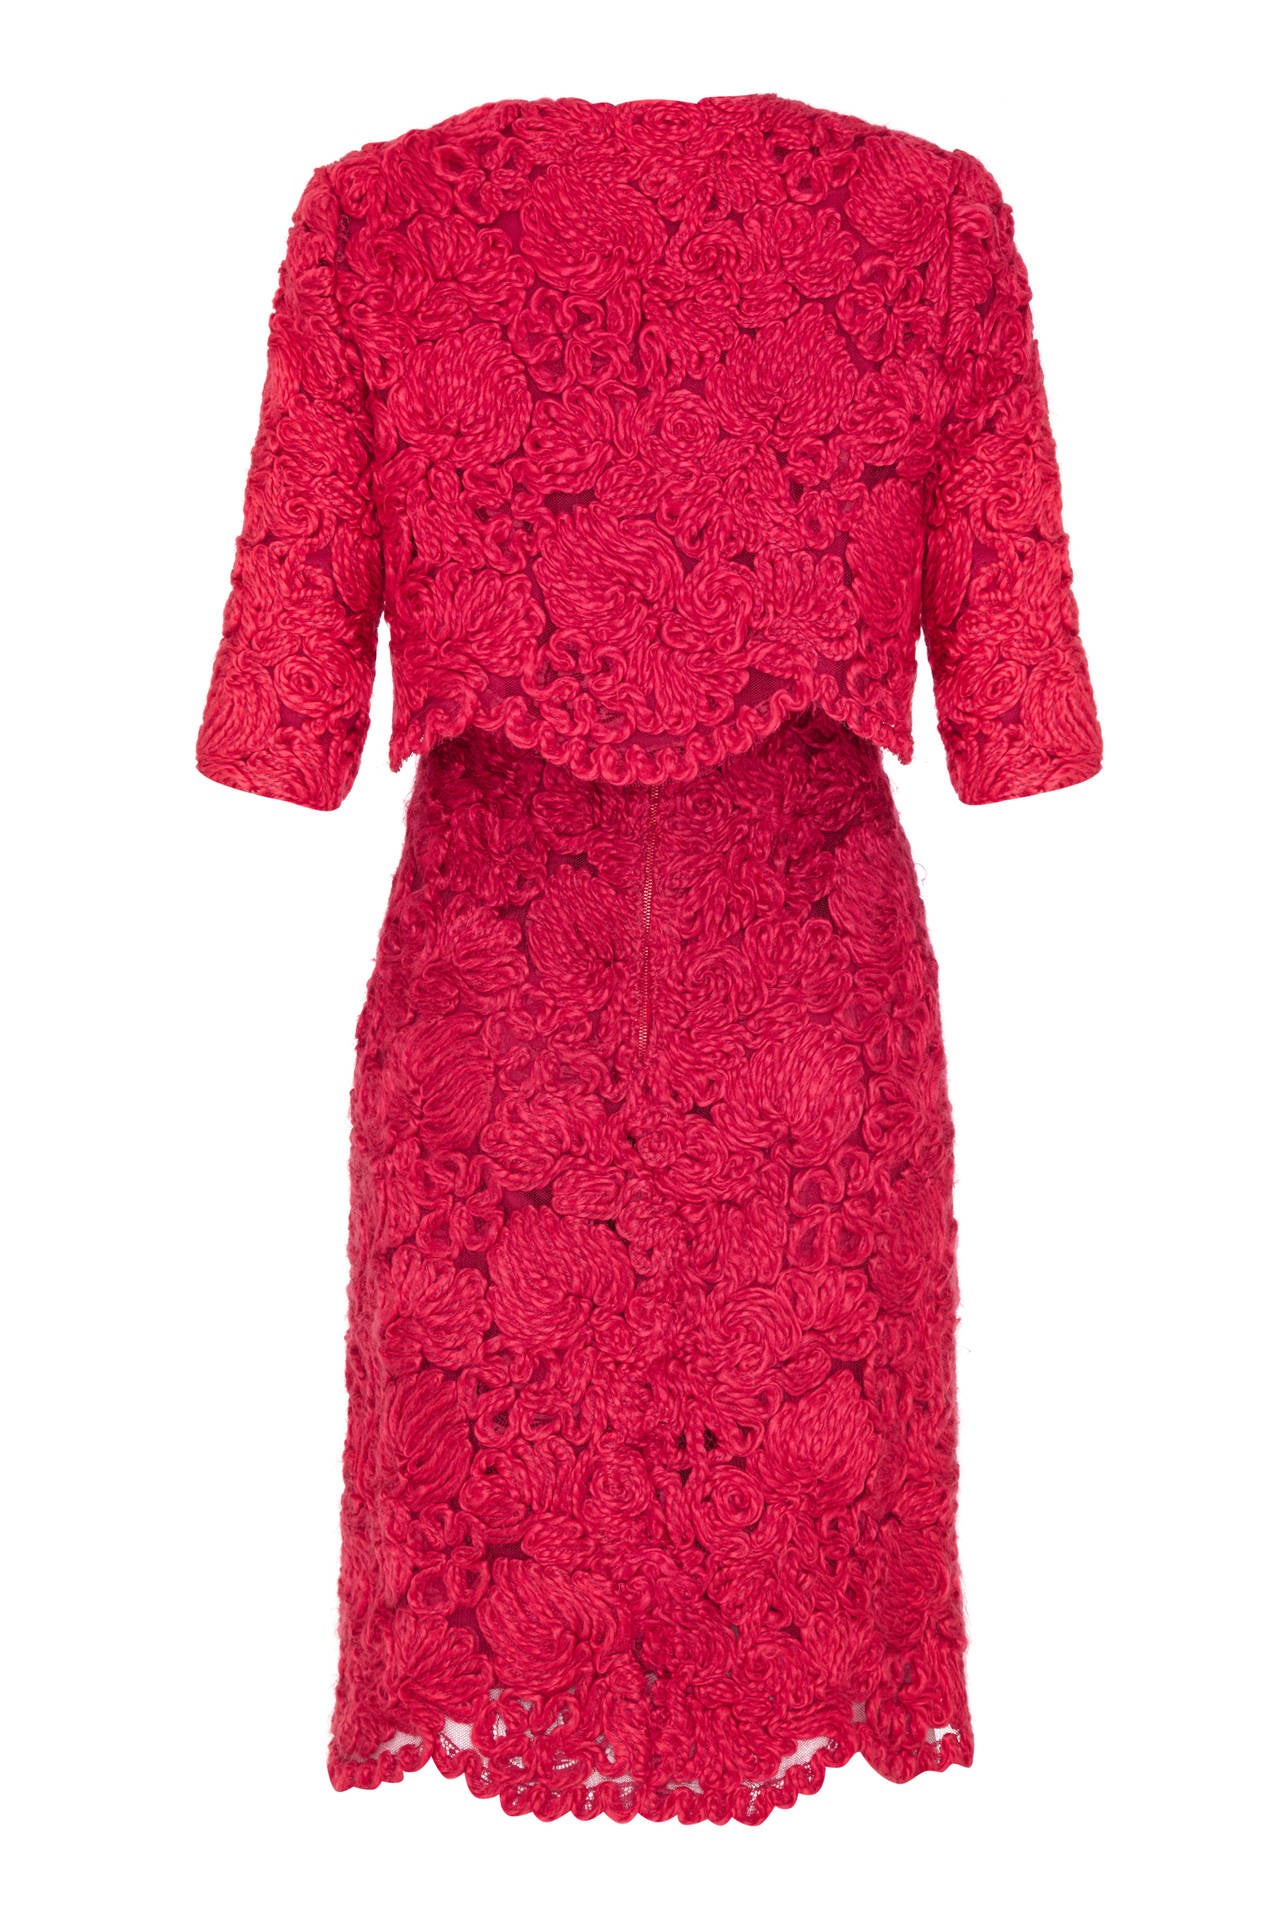 Rouge Tailleur robe à appliques en laine rouge de haute couture française, années 1960 en vente